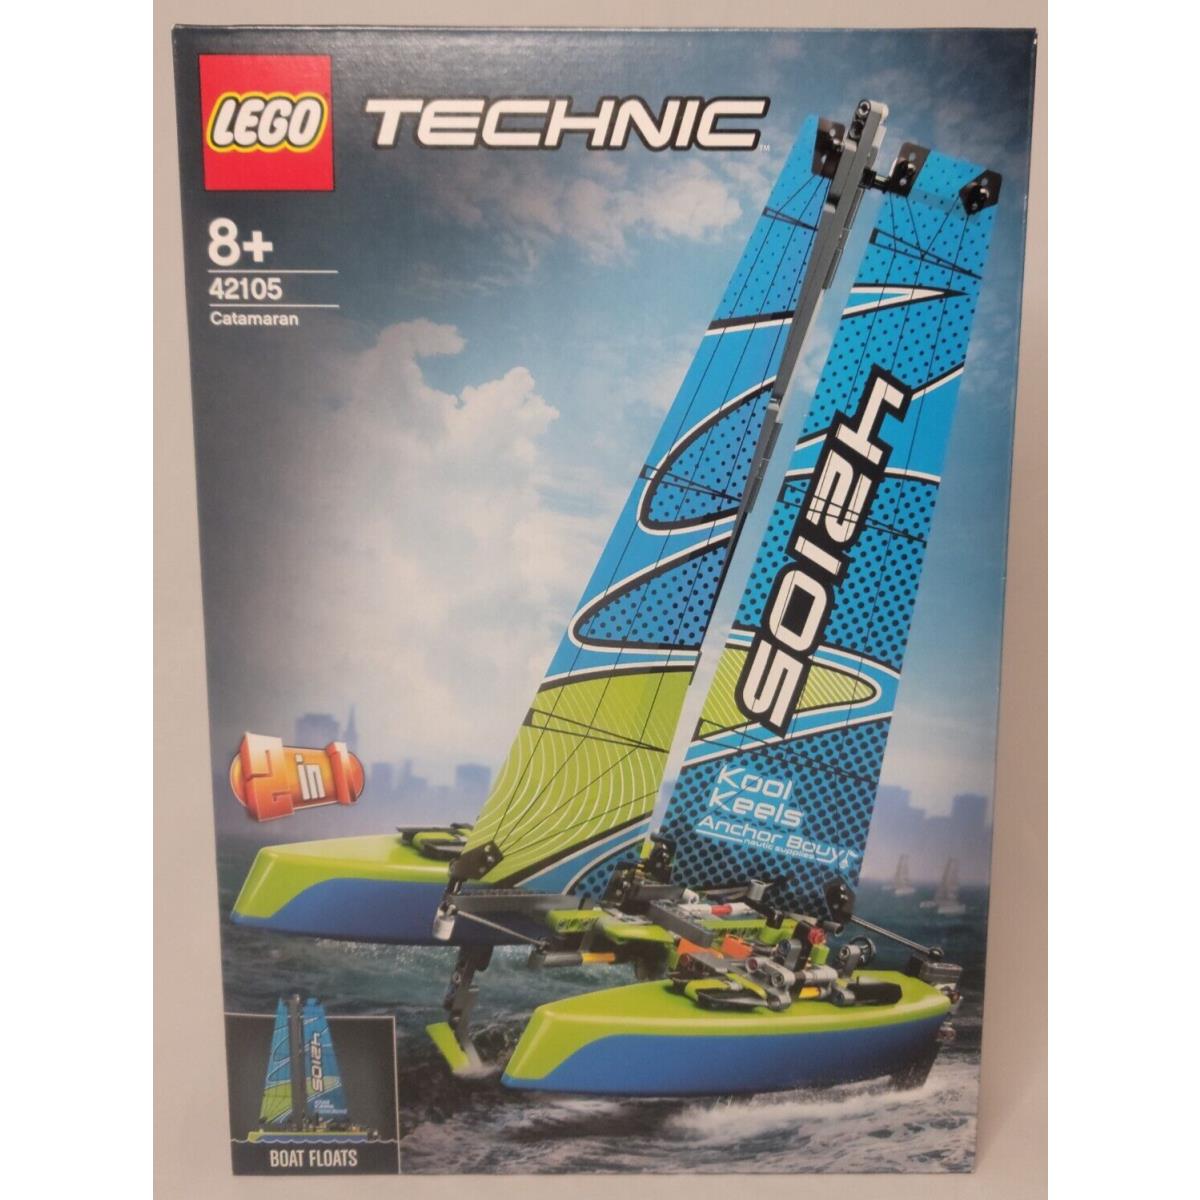 Lego 42105 Catamaran Technic 2 in 1 Race Power Boat Boat Floats